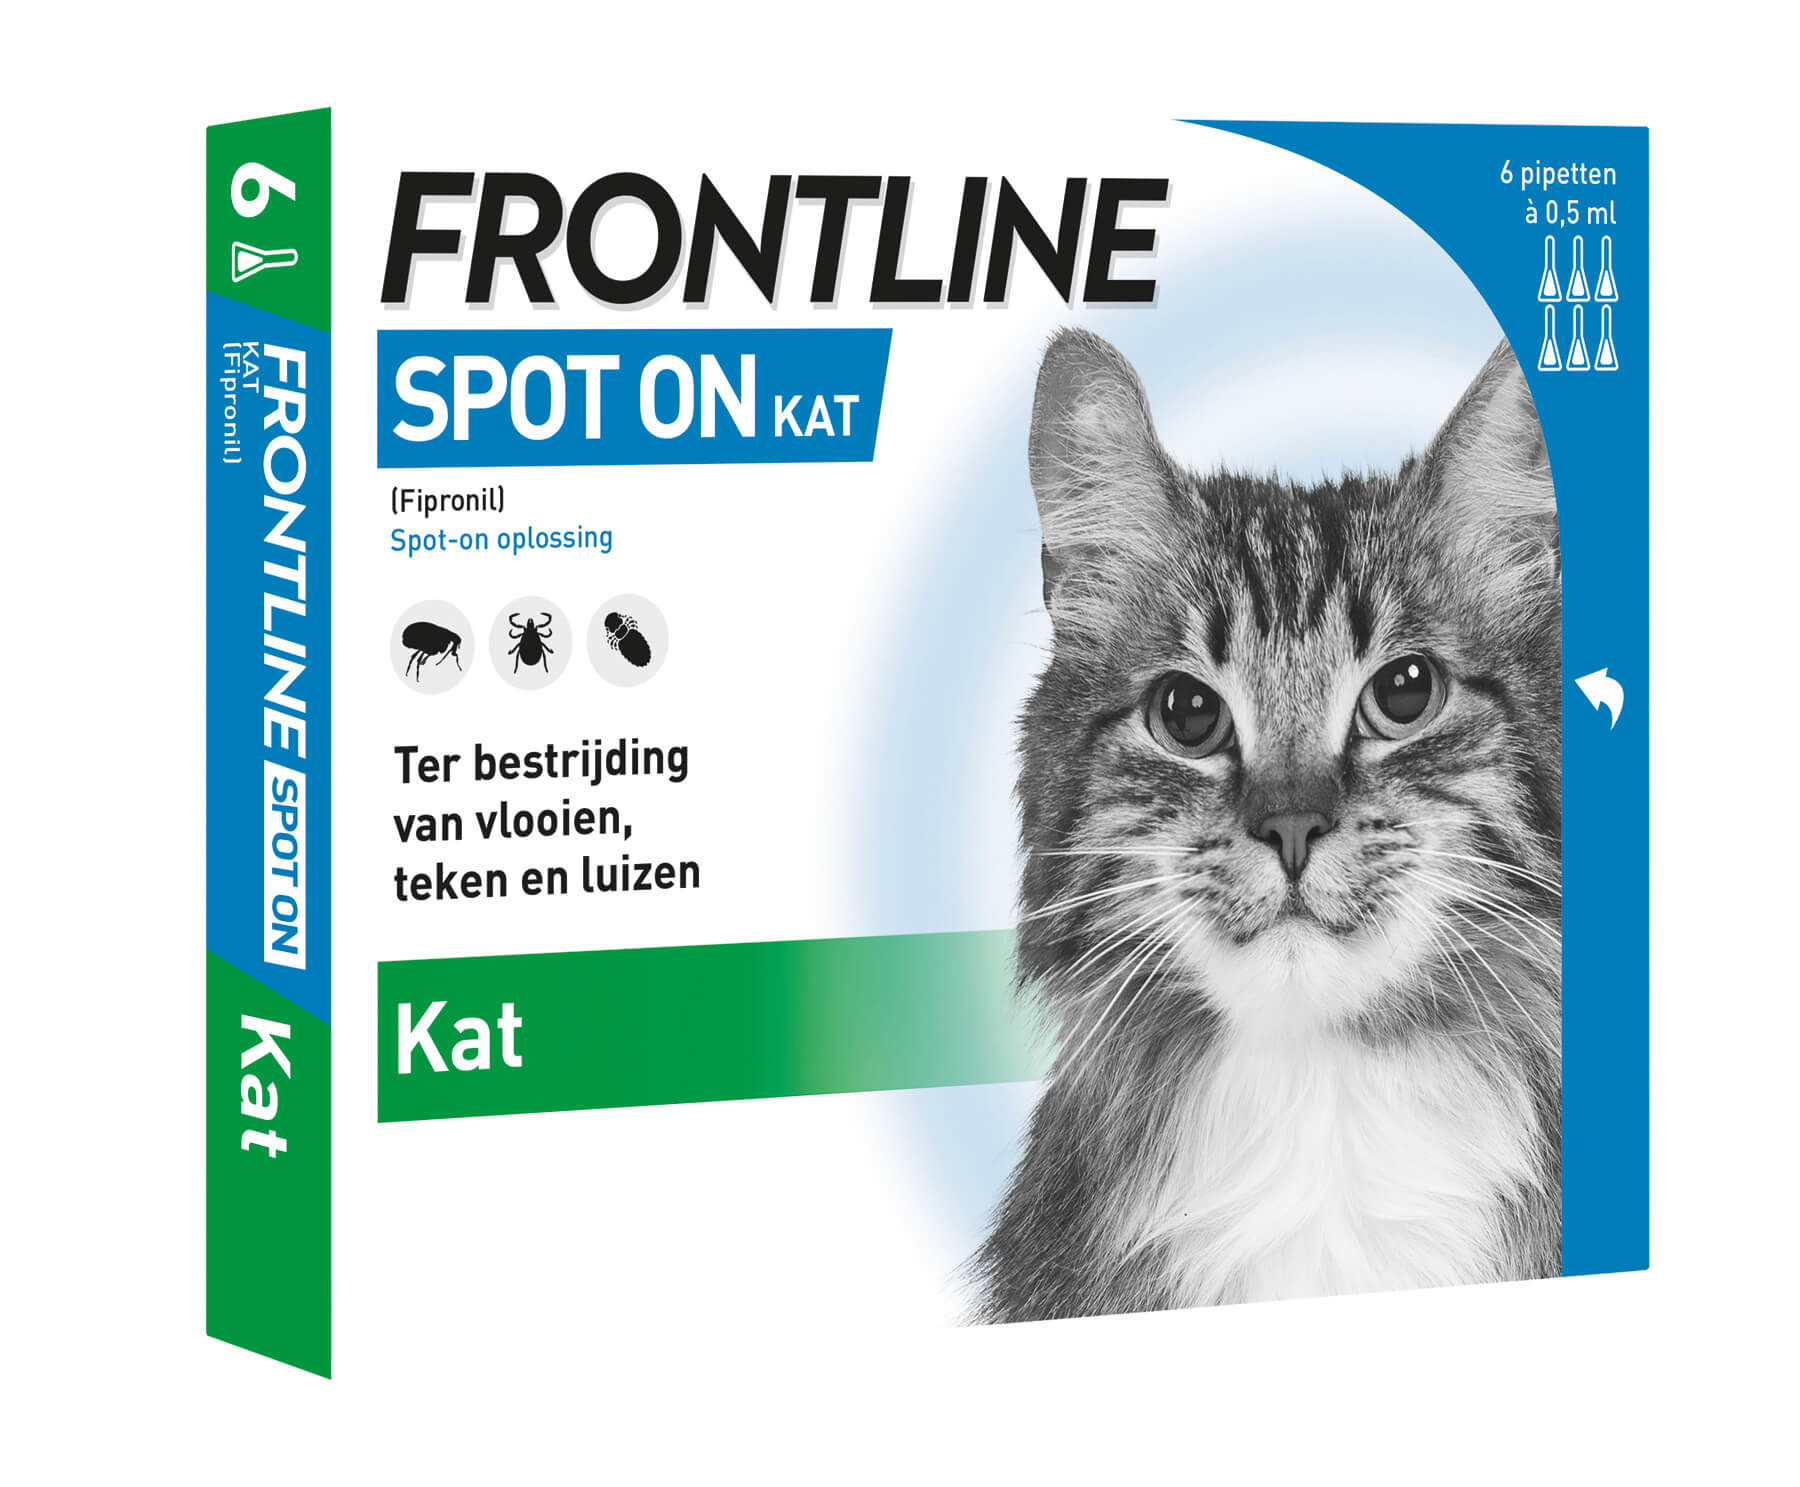 Frontline Spot-on kat